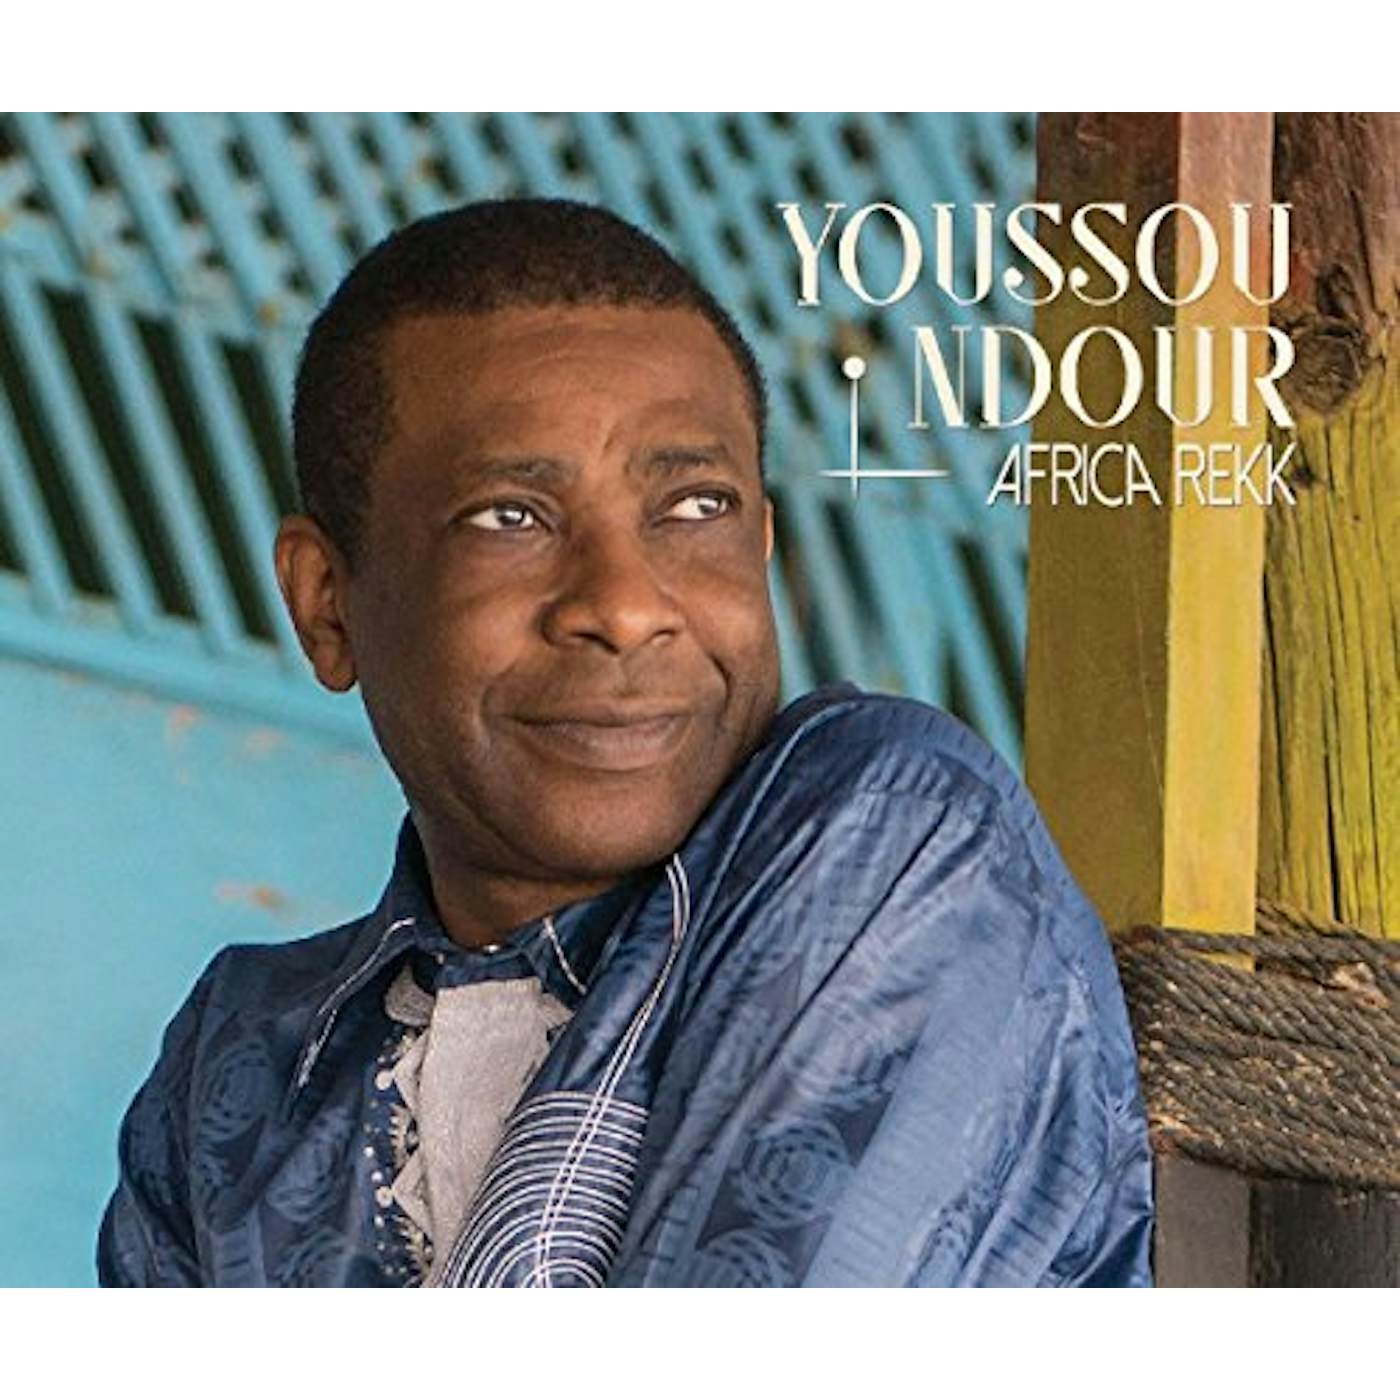 Youssou N'Dour AFRICA REKK CD